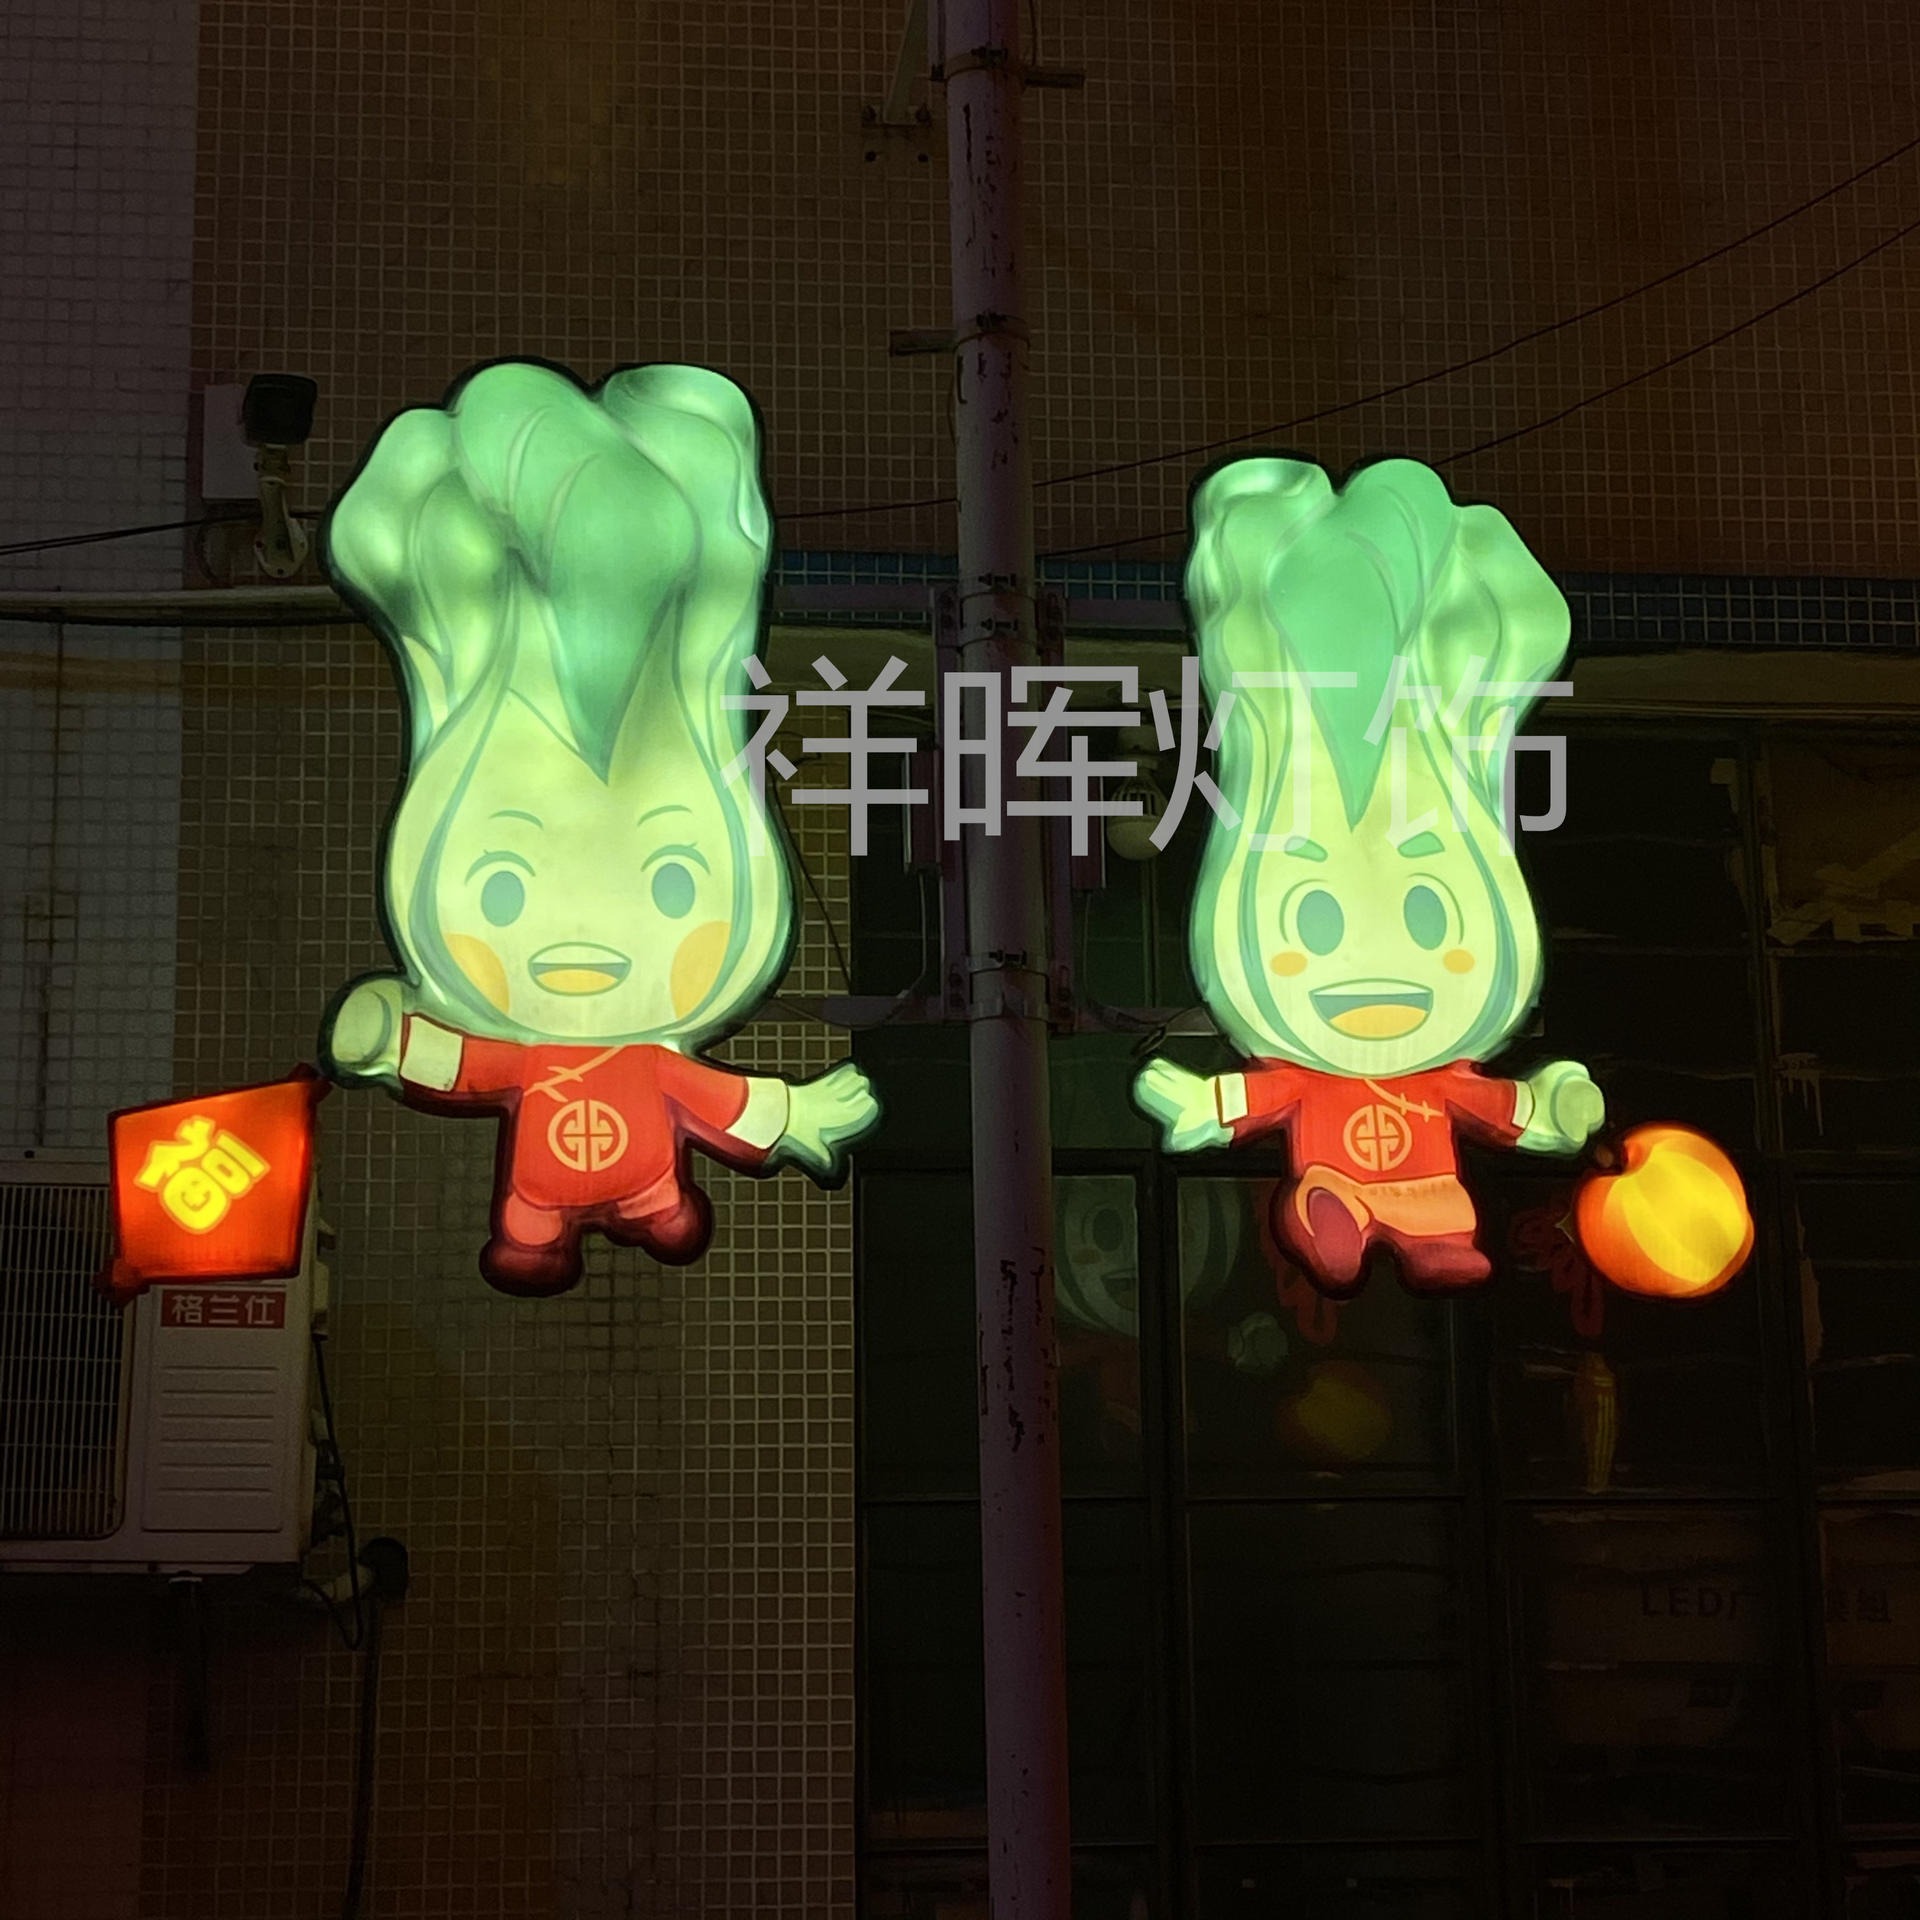 户外路灯杆led蔬菜造型灯景观灯灯具 电线杆挂件亚克力吸塑彩灯祥晖灯饰